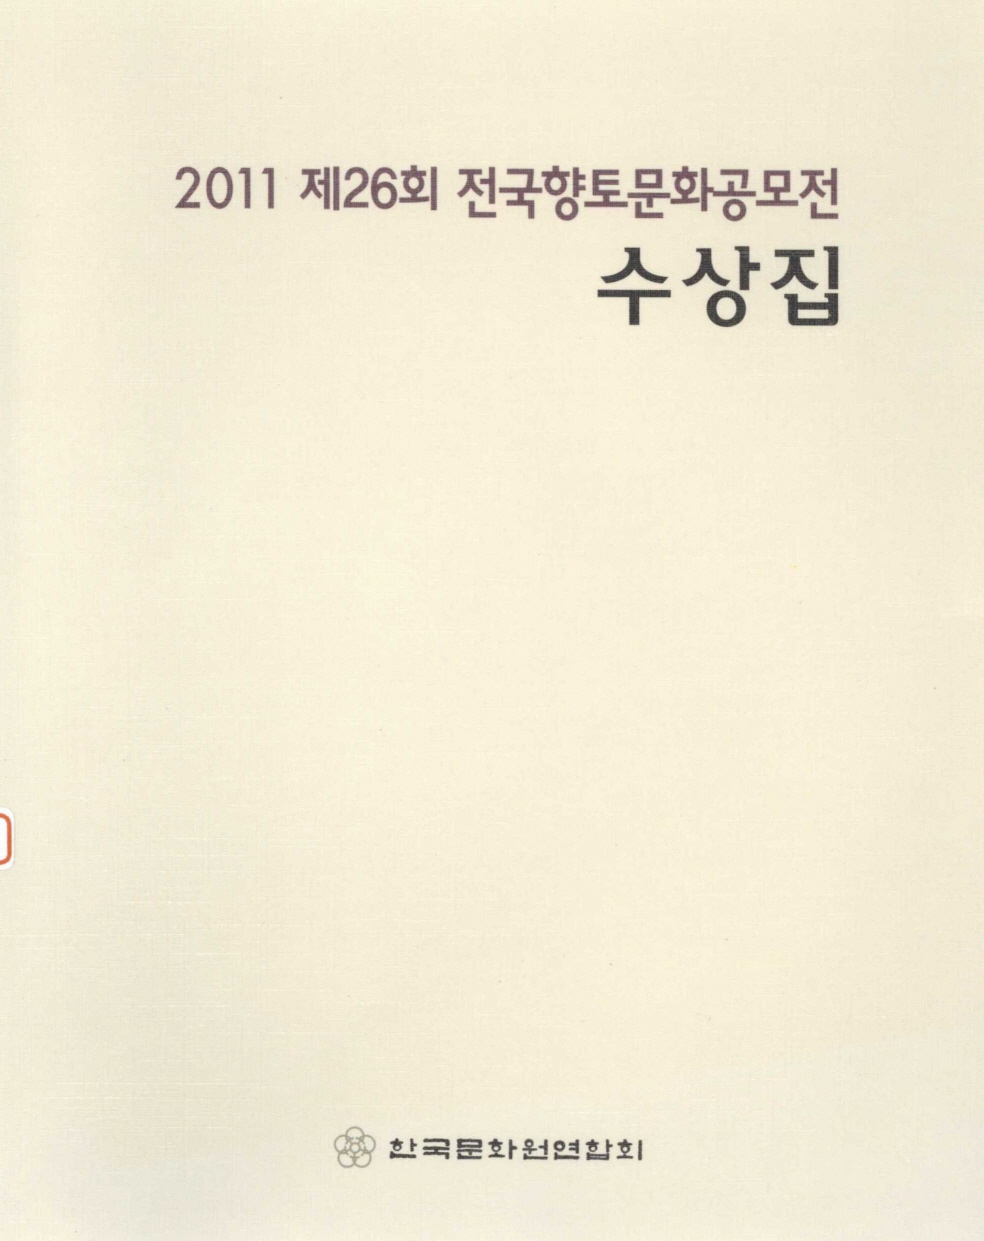 2011 제26회 전국향토문화공모전 수상집